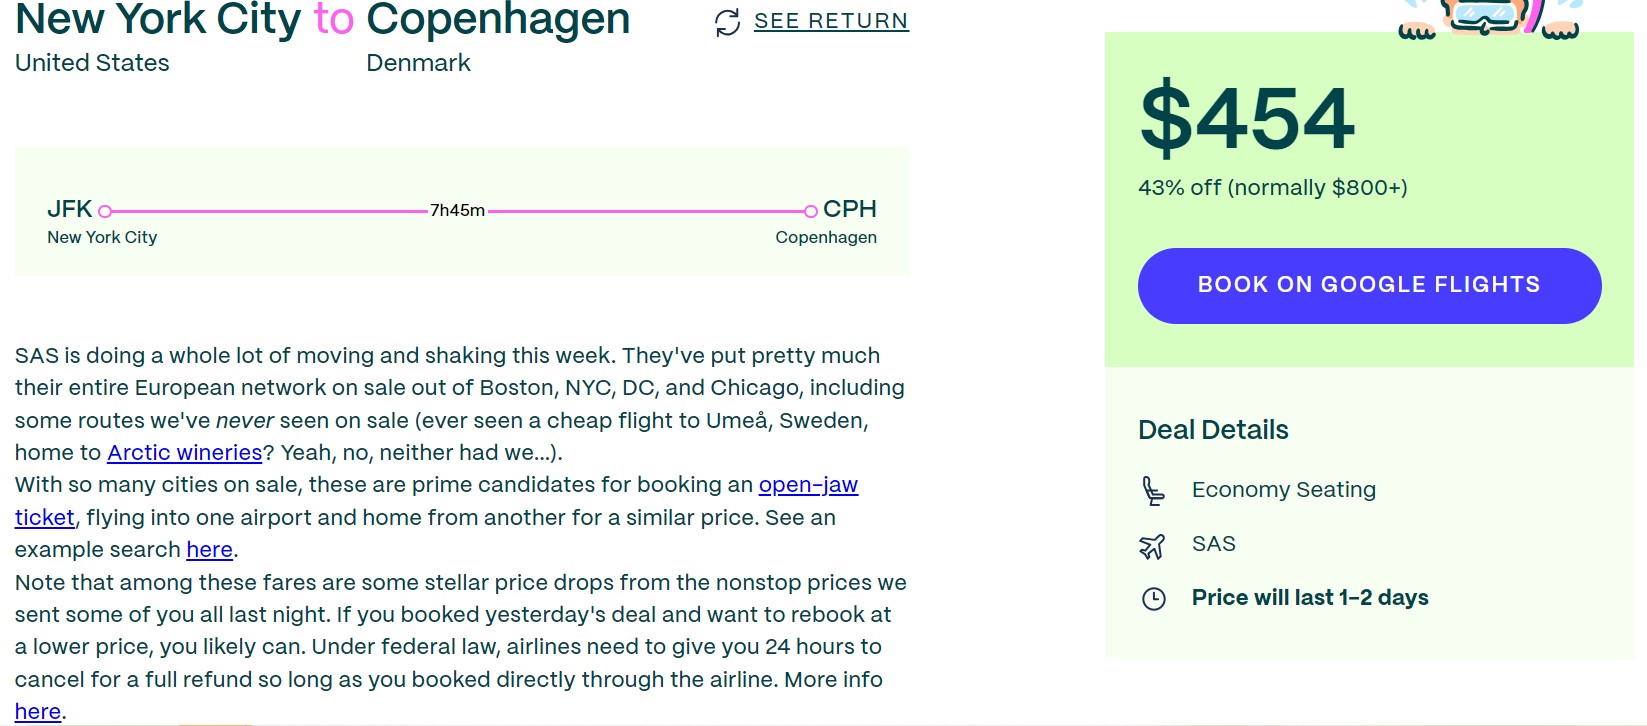 لقطة شاشة من موقع سفر Going تعرض صفقة طيران من مدينة نيويورك إلى كوبنهاغن ، الدنمارك